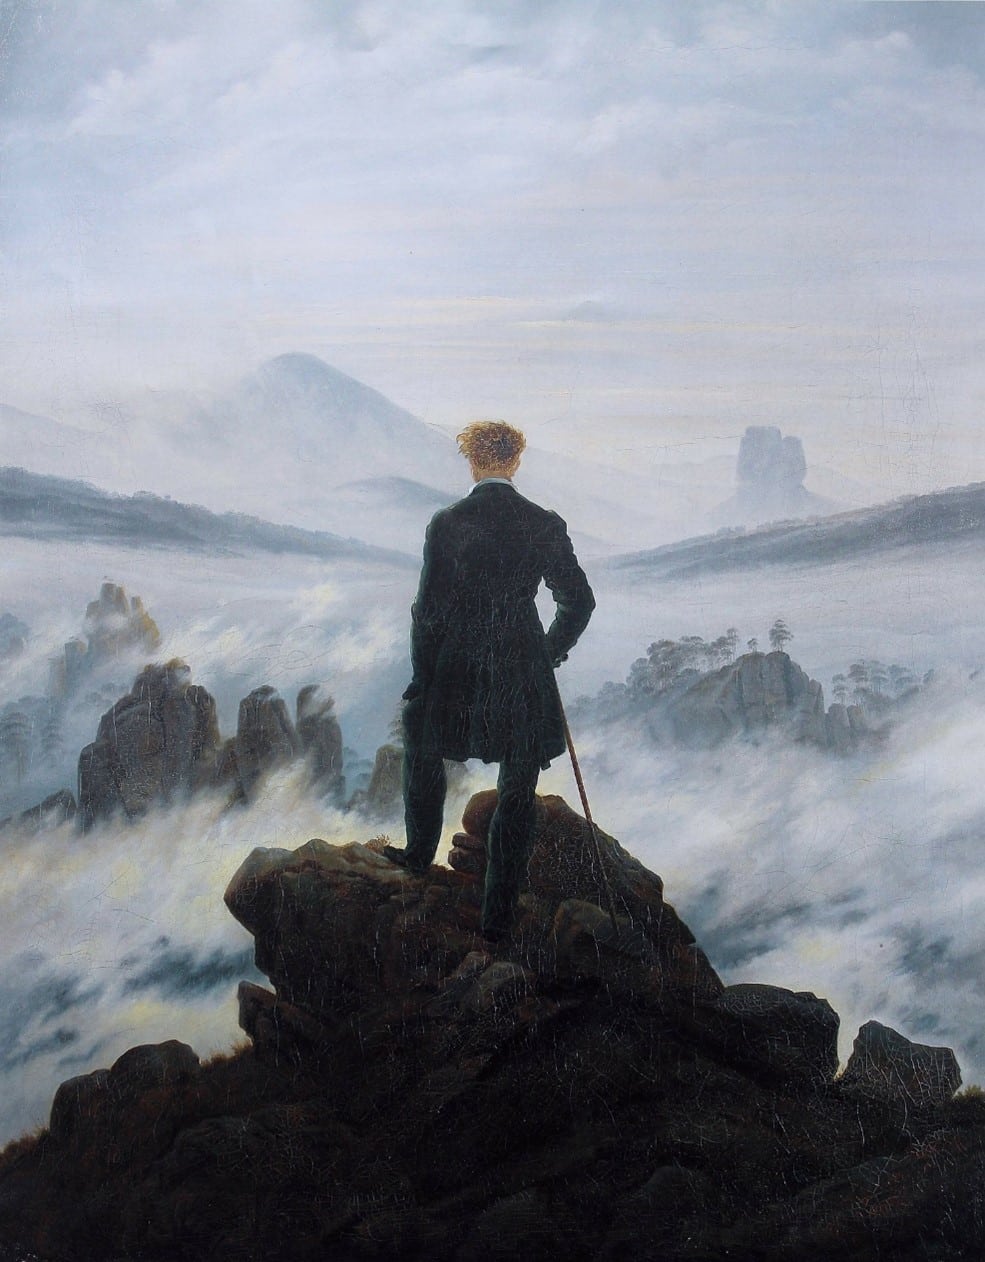  ドイツ・ロマン主義絵画の代表的画家、カスパー・ダビッド・フリードリヒの 『Der Wanderer über dem Nebelmeer』